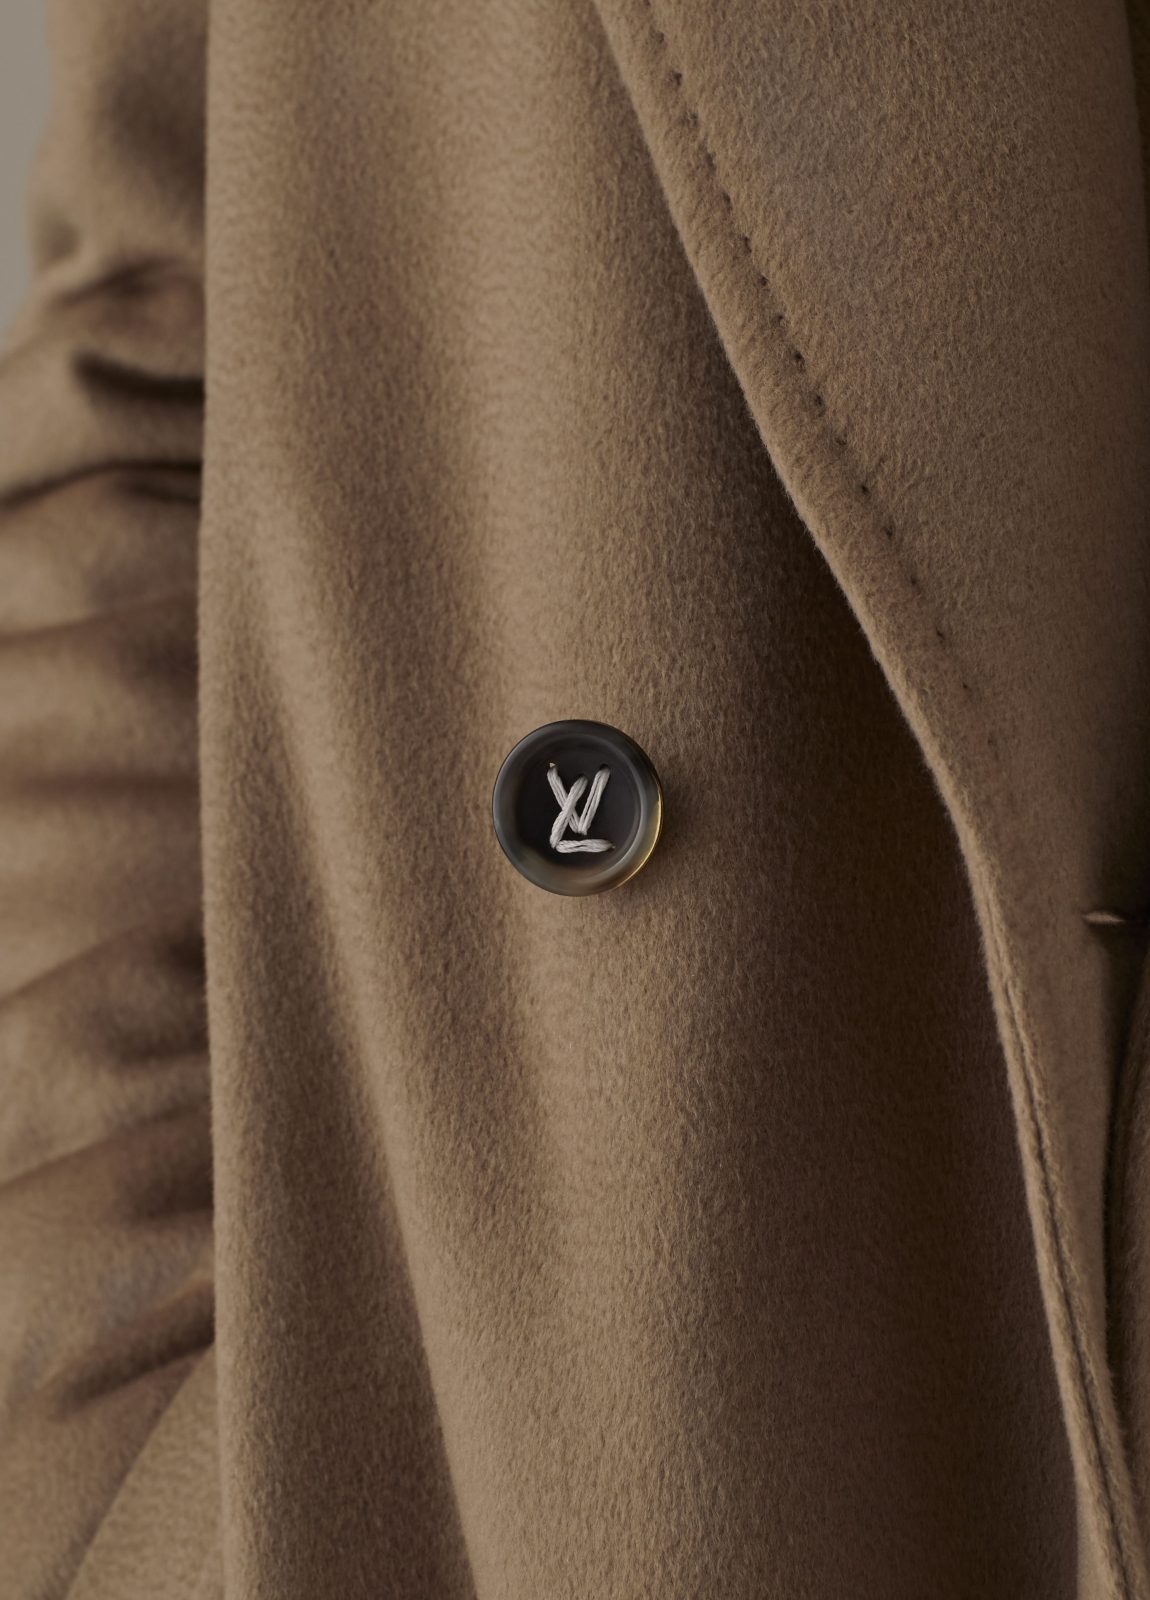 Louis Vuitton Men's Fall Winter 2019 Precollection